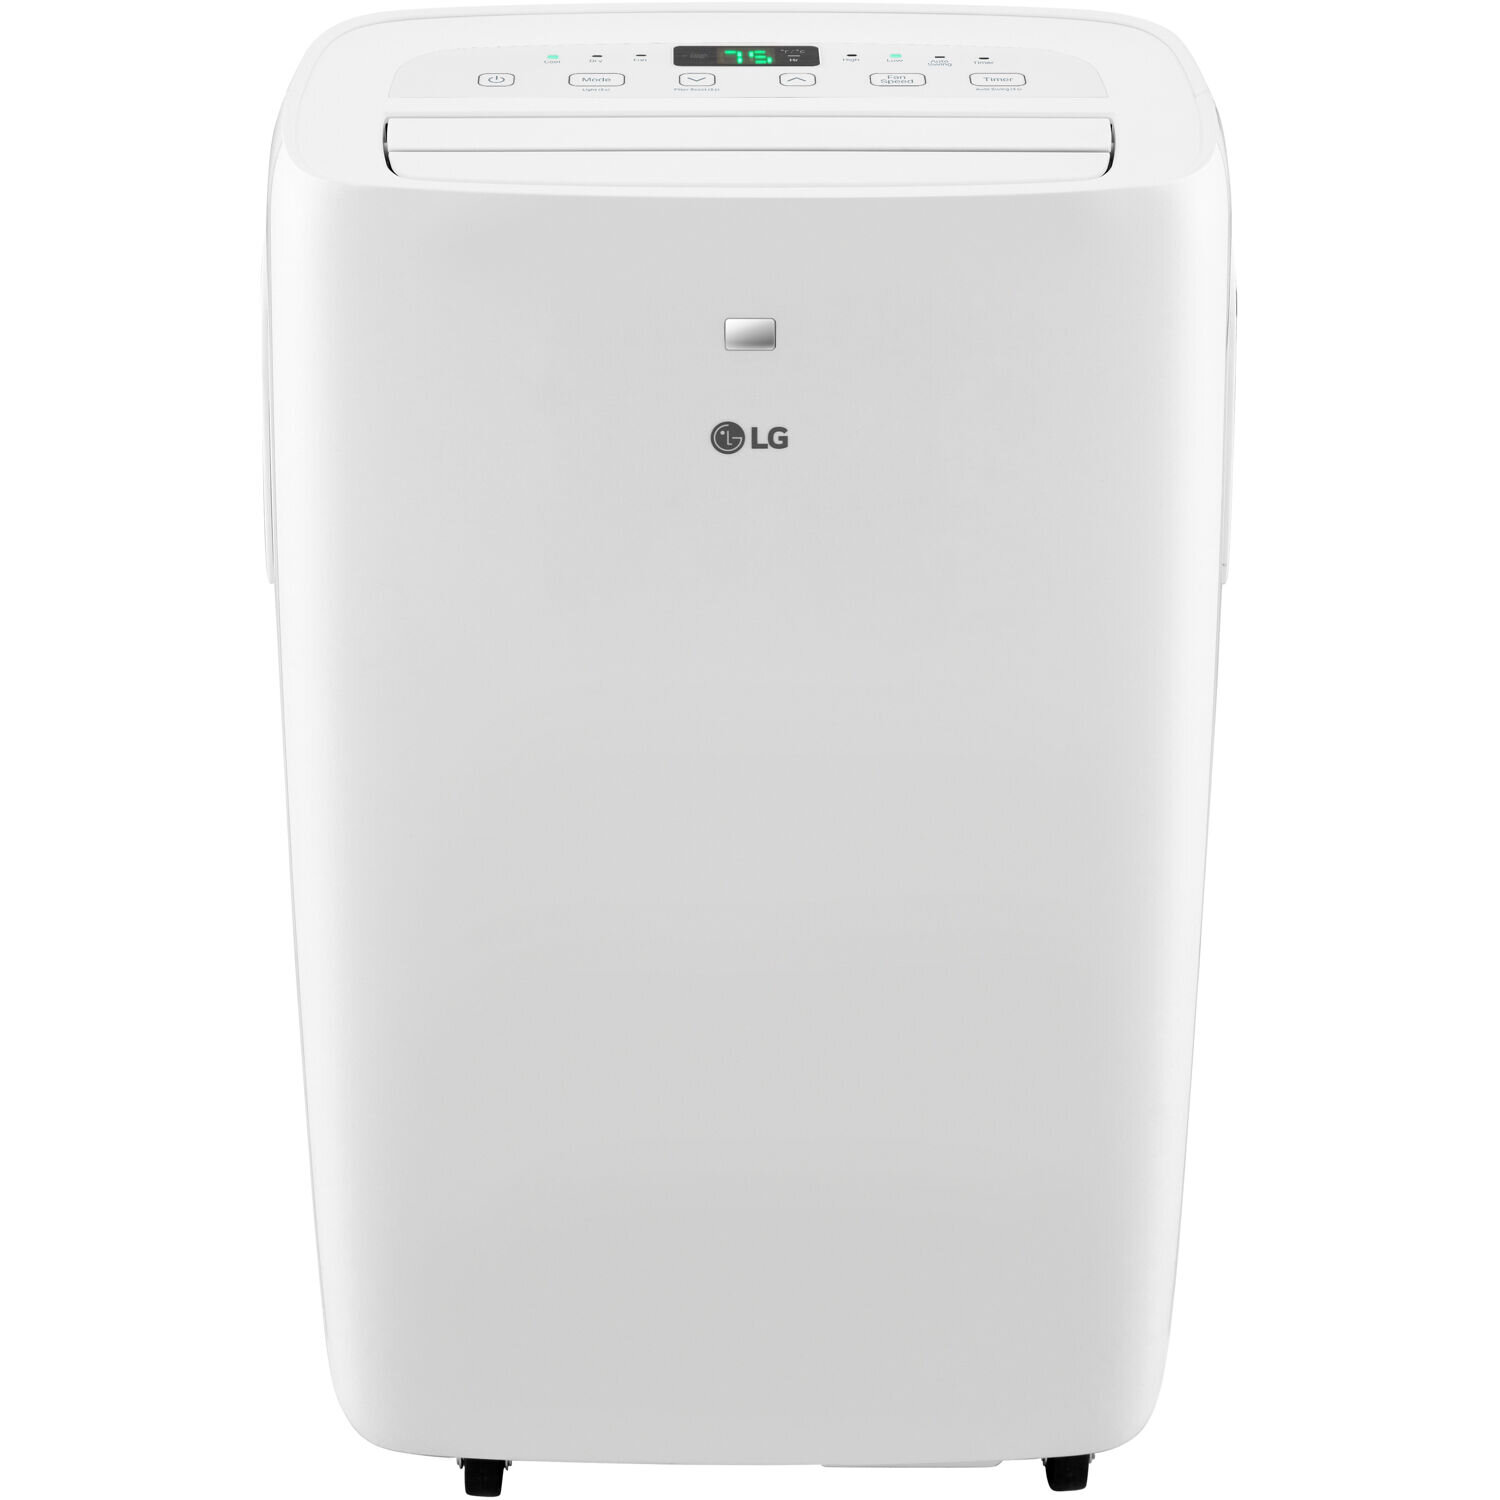  AIRO COMFORT Portable Air Conditioner 10000 BTU for